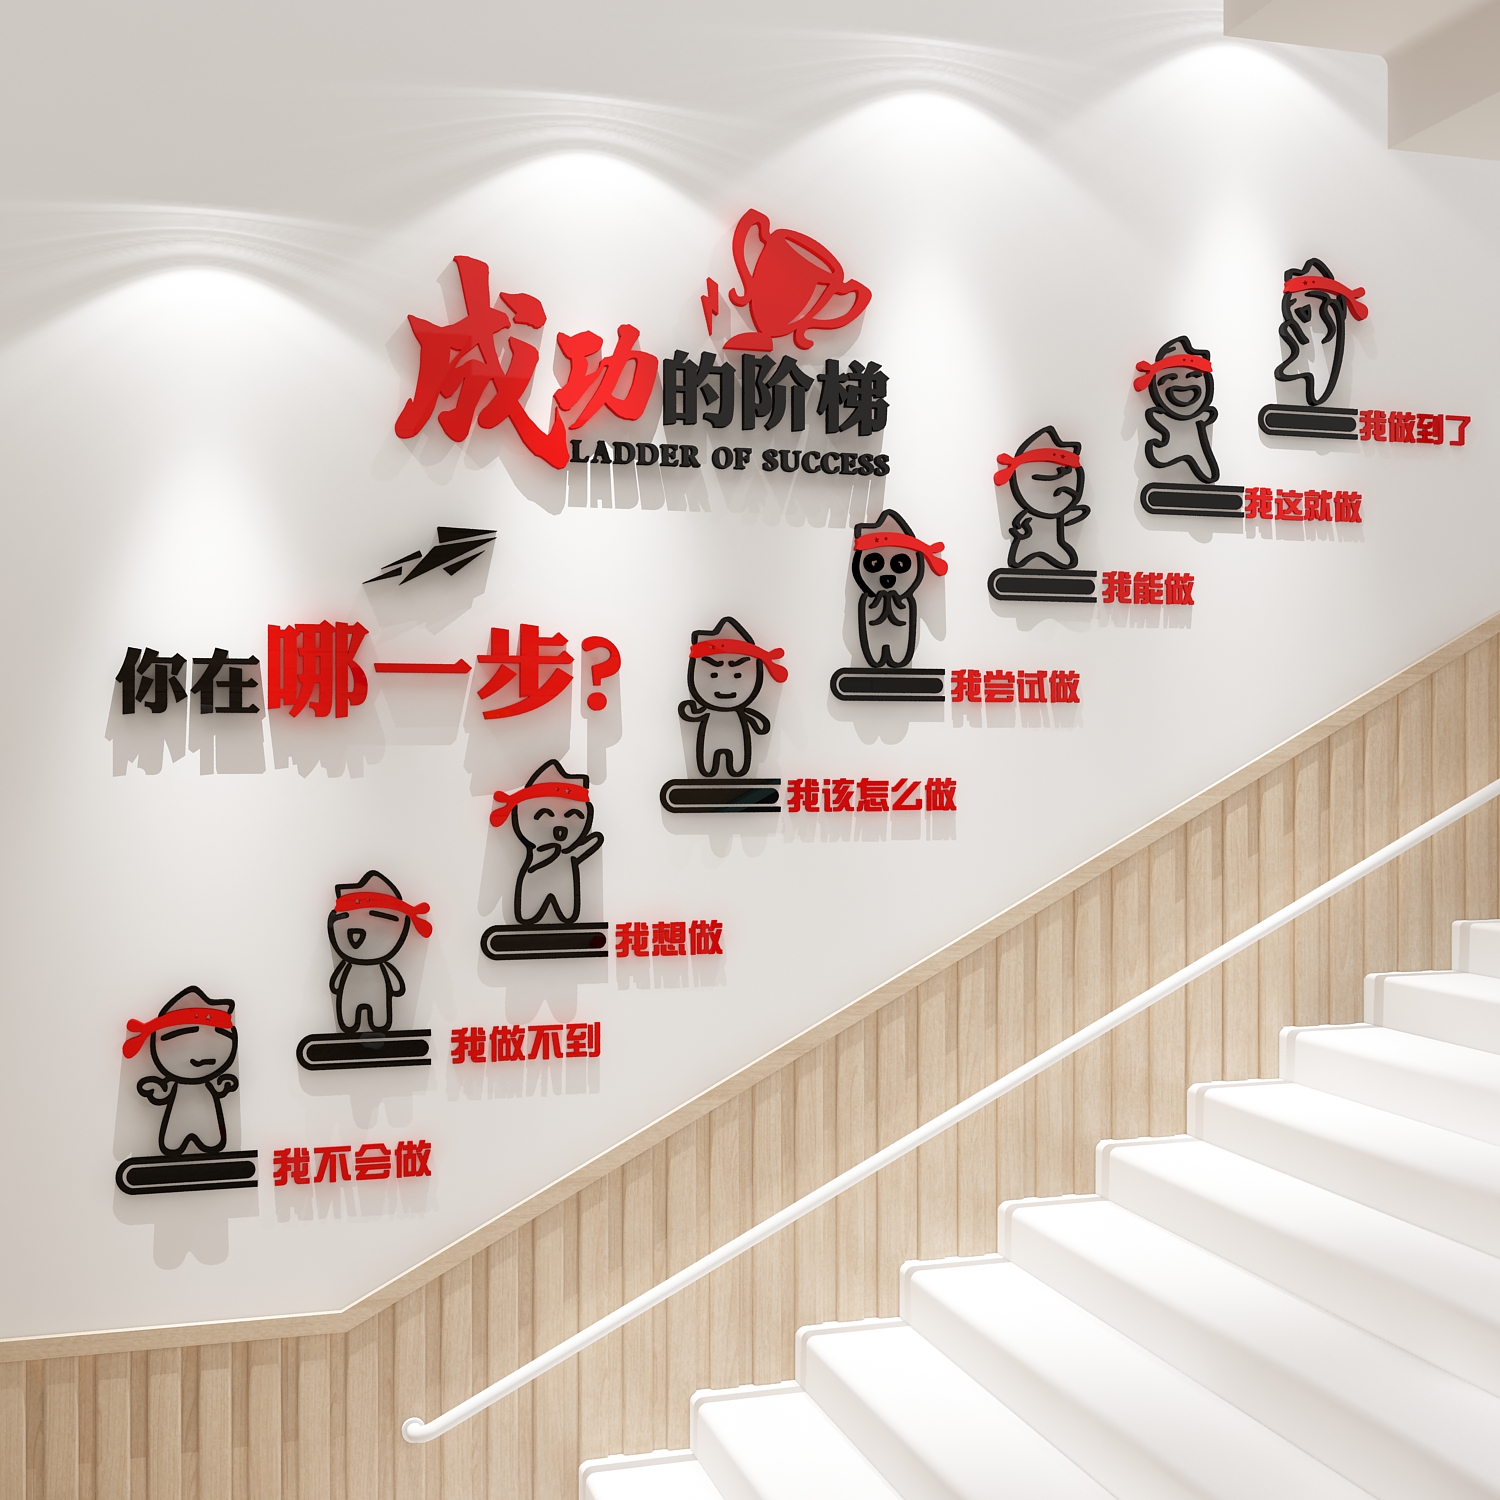 办公室墙面装饰企业文化会议公司背景标语贴布置楼梯成功的台阶梯